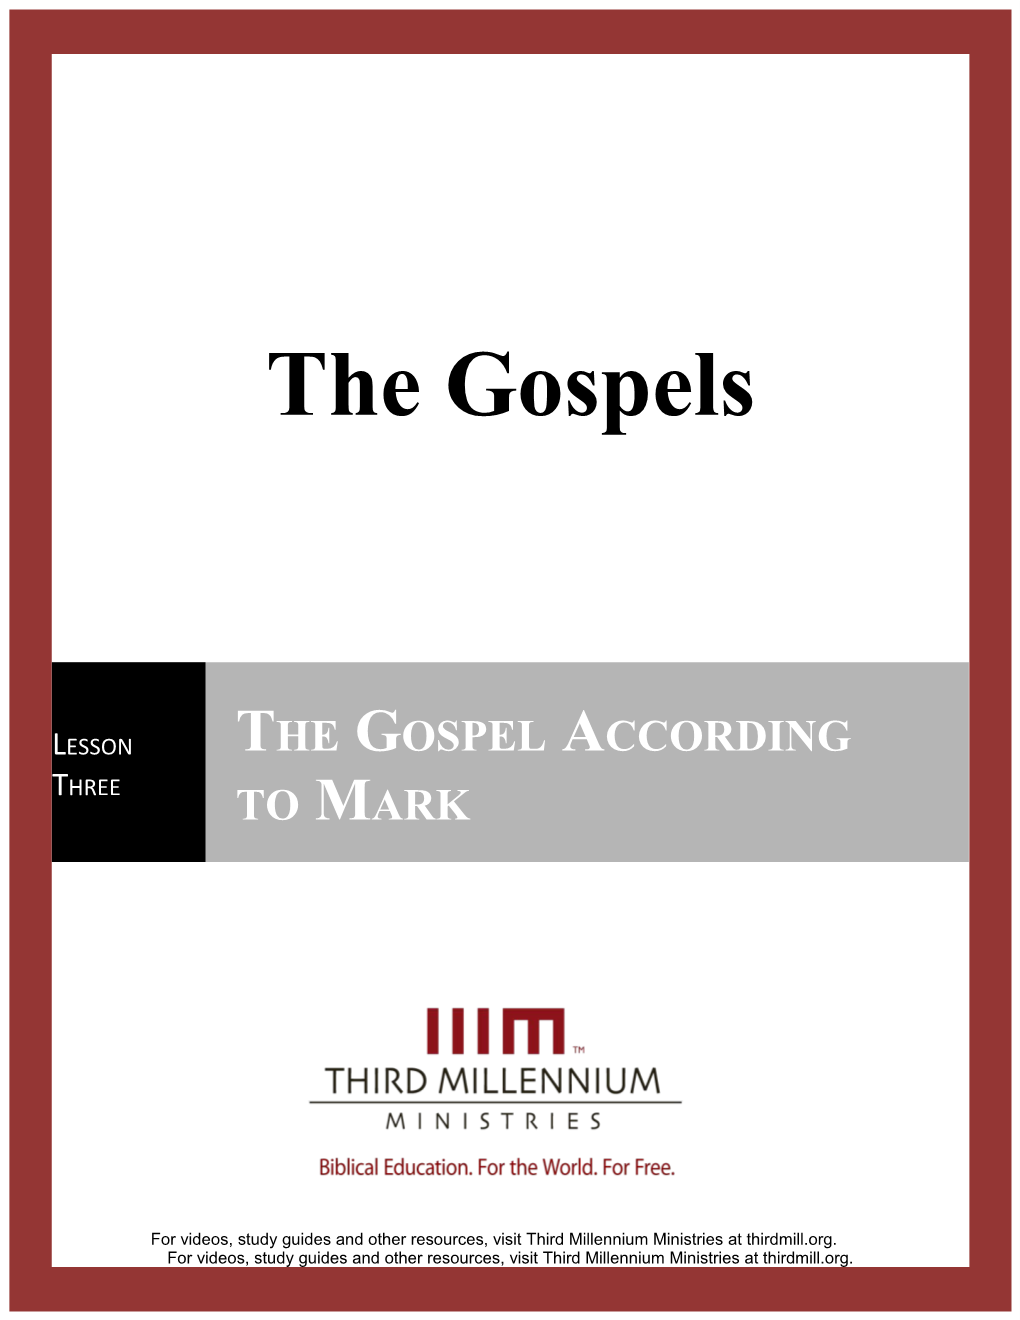 The Gospels, Lesson 3